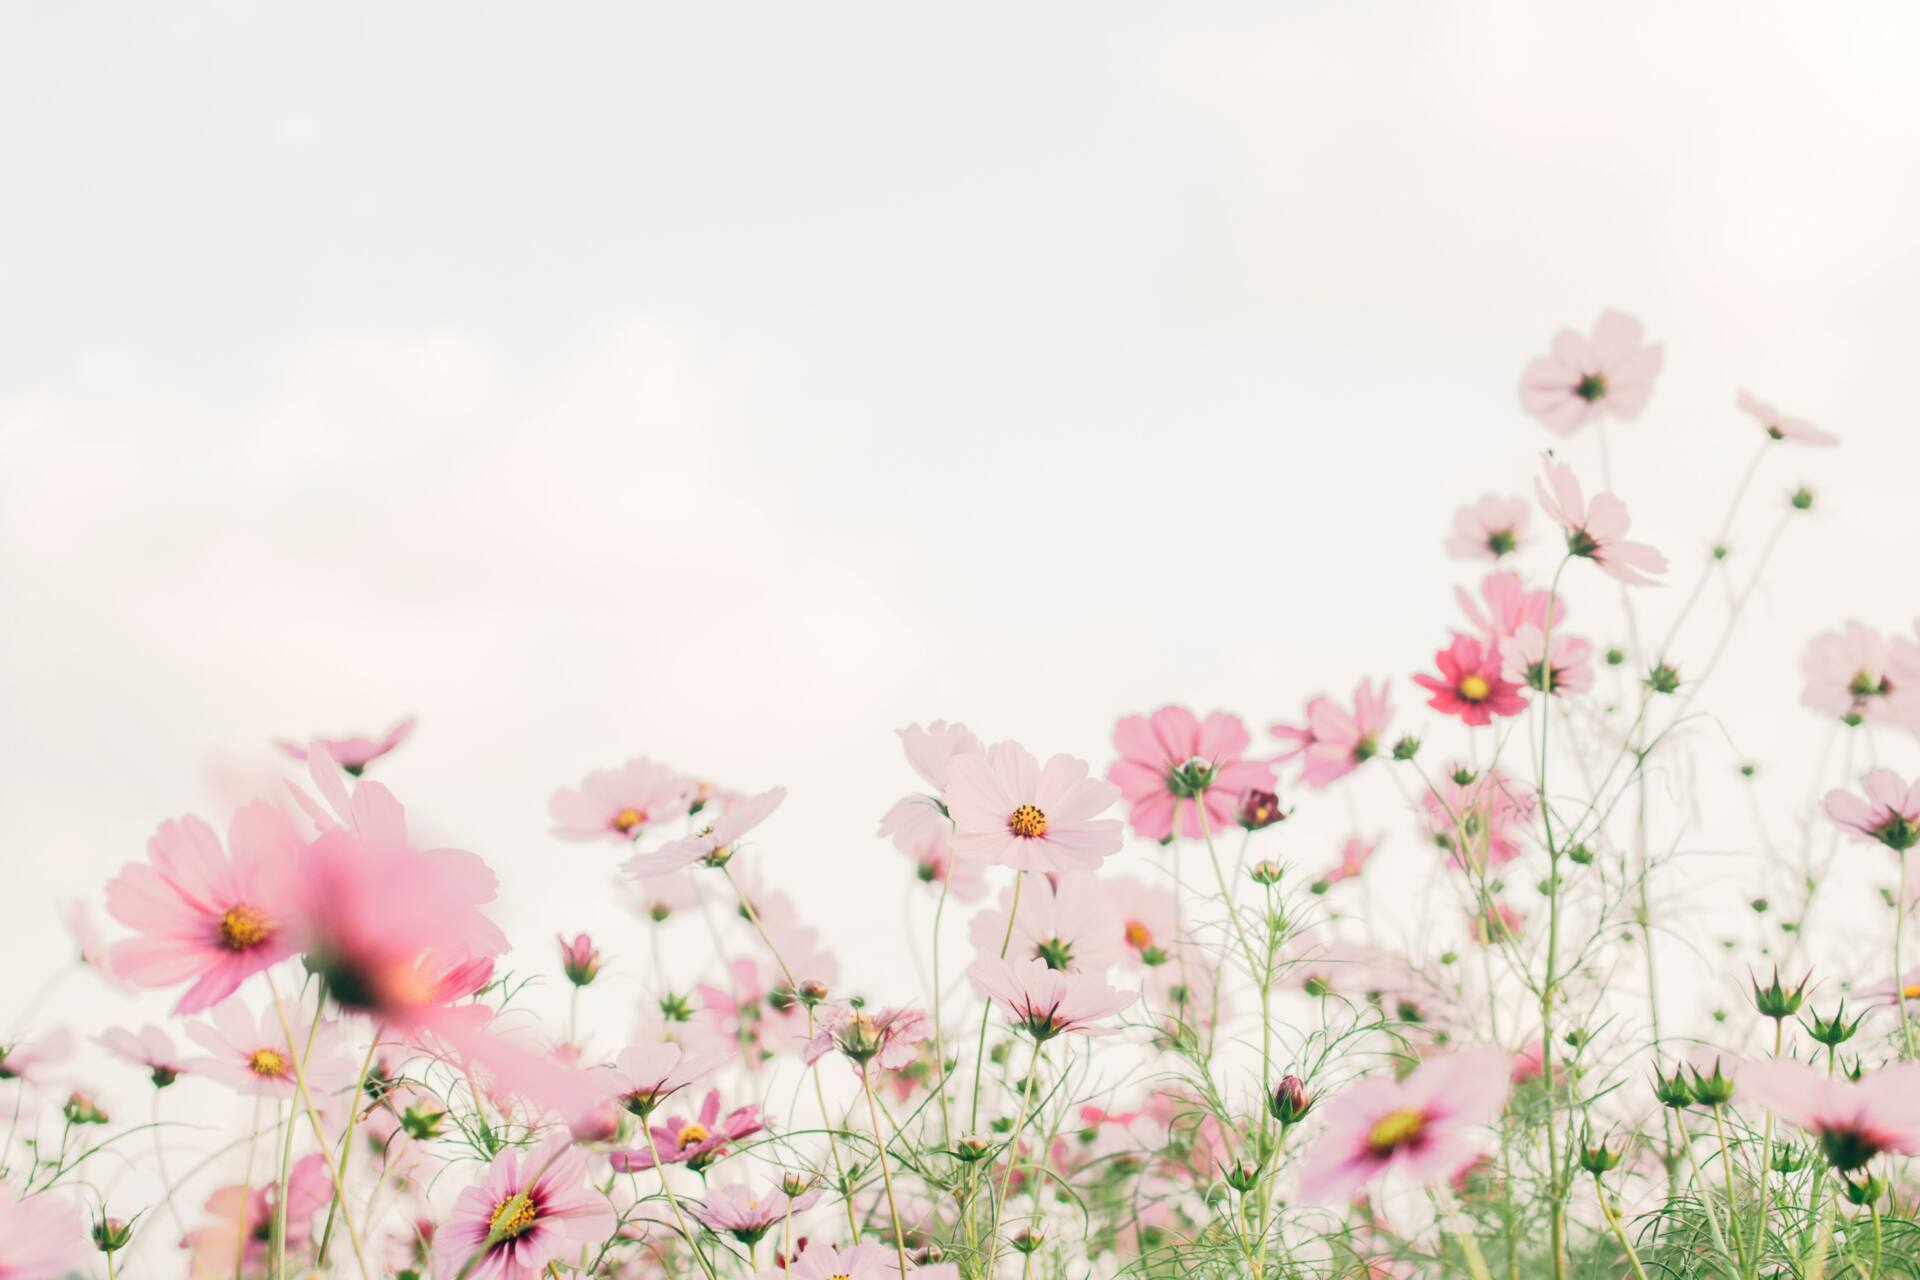 Pink flowers in a field